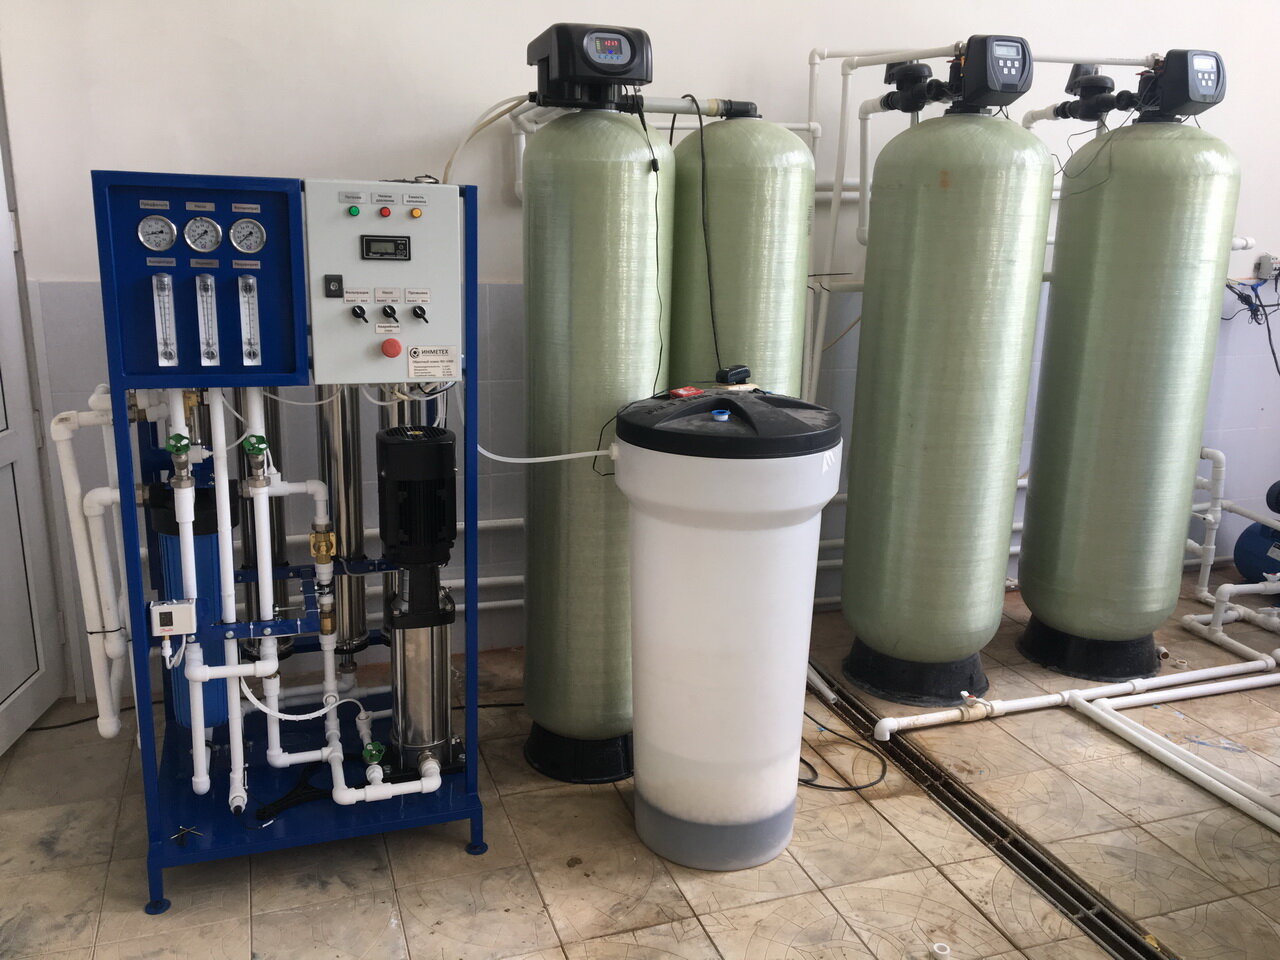 Промышленные фильтры для очистки воды. Система водоподготовки Промышленная. Промышленный фильтр ФСУ для очистки питьевой воды. Промышленная фильтрация воды 60м3. Системы водоочистки промышленные.